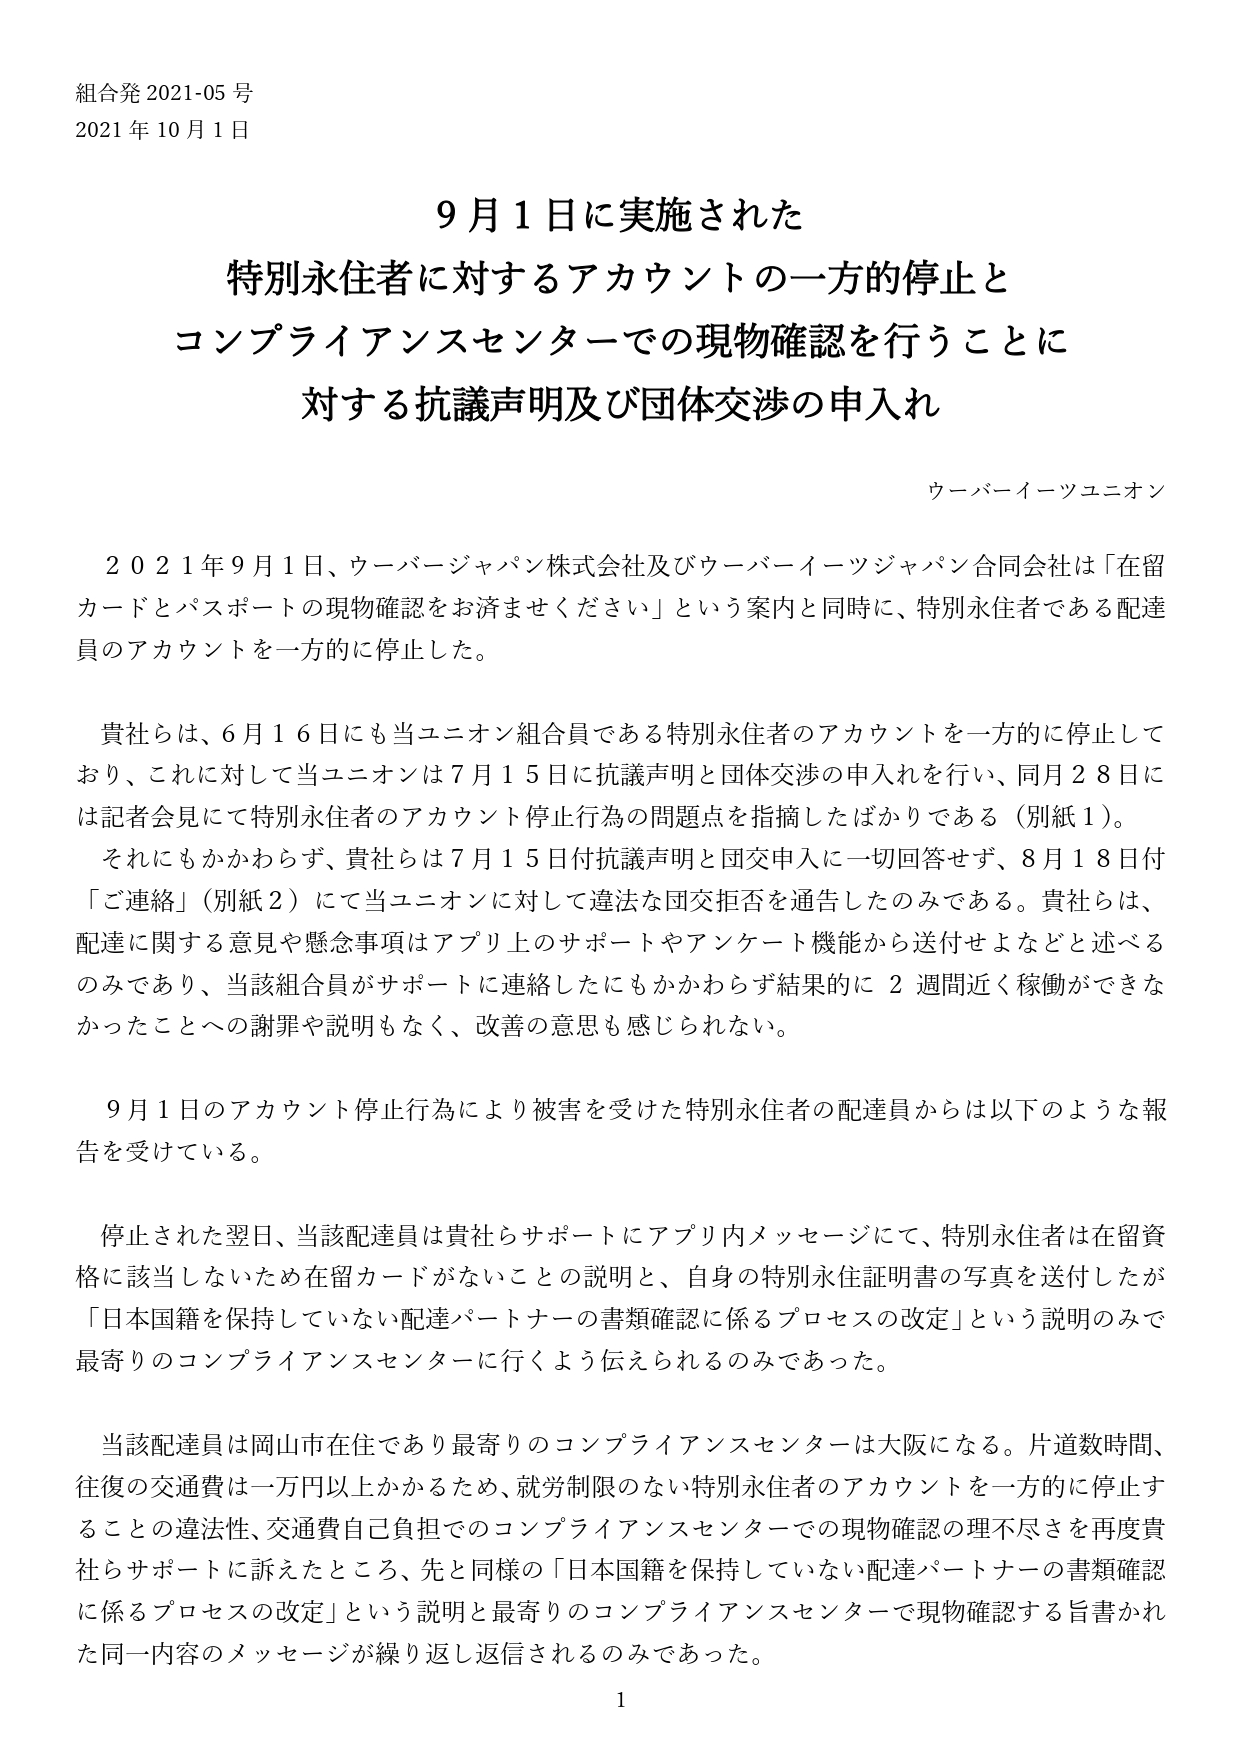 【記者会見】9/1の特別永住者に対するアカウントの一方的停止に対する抗議声明